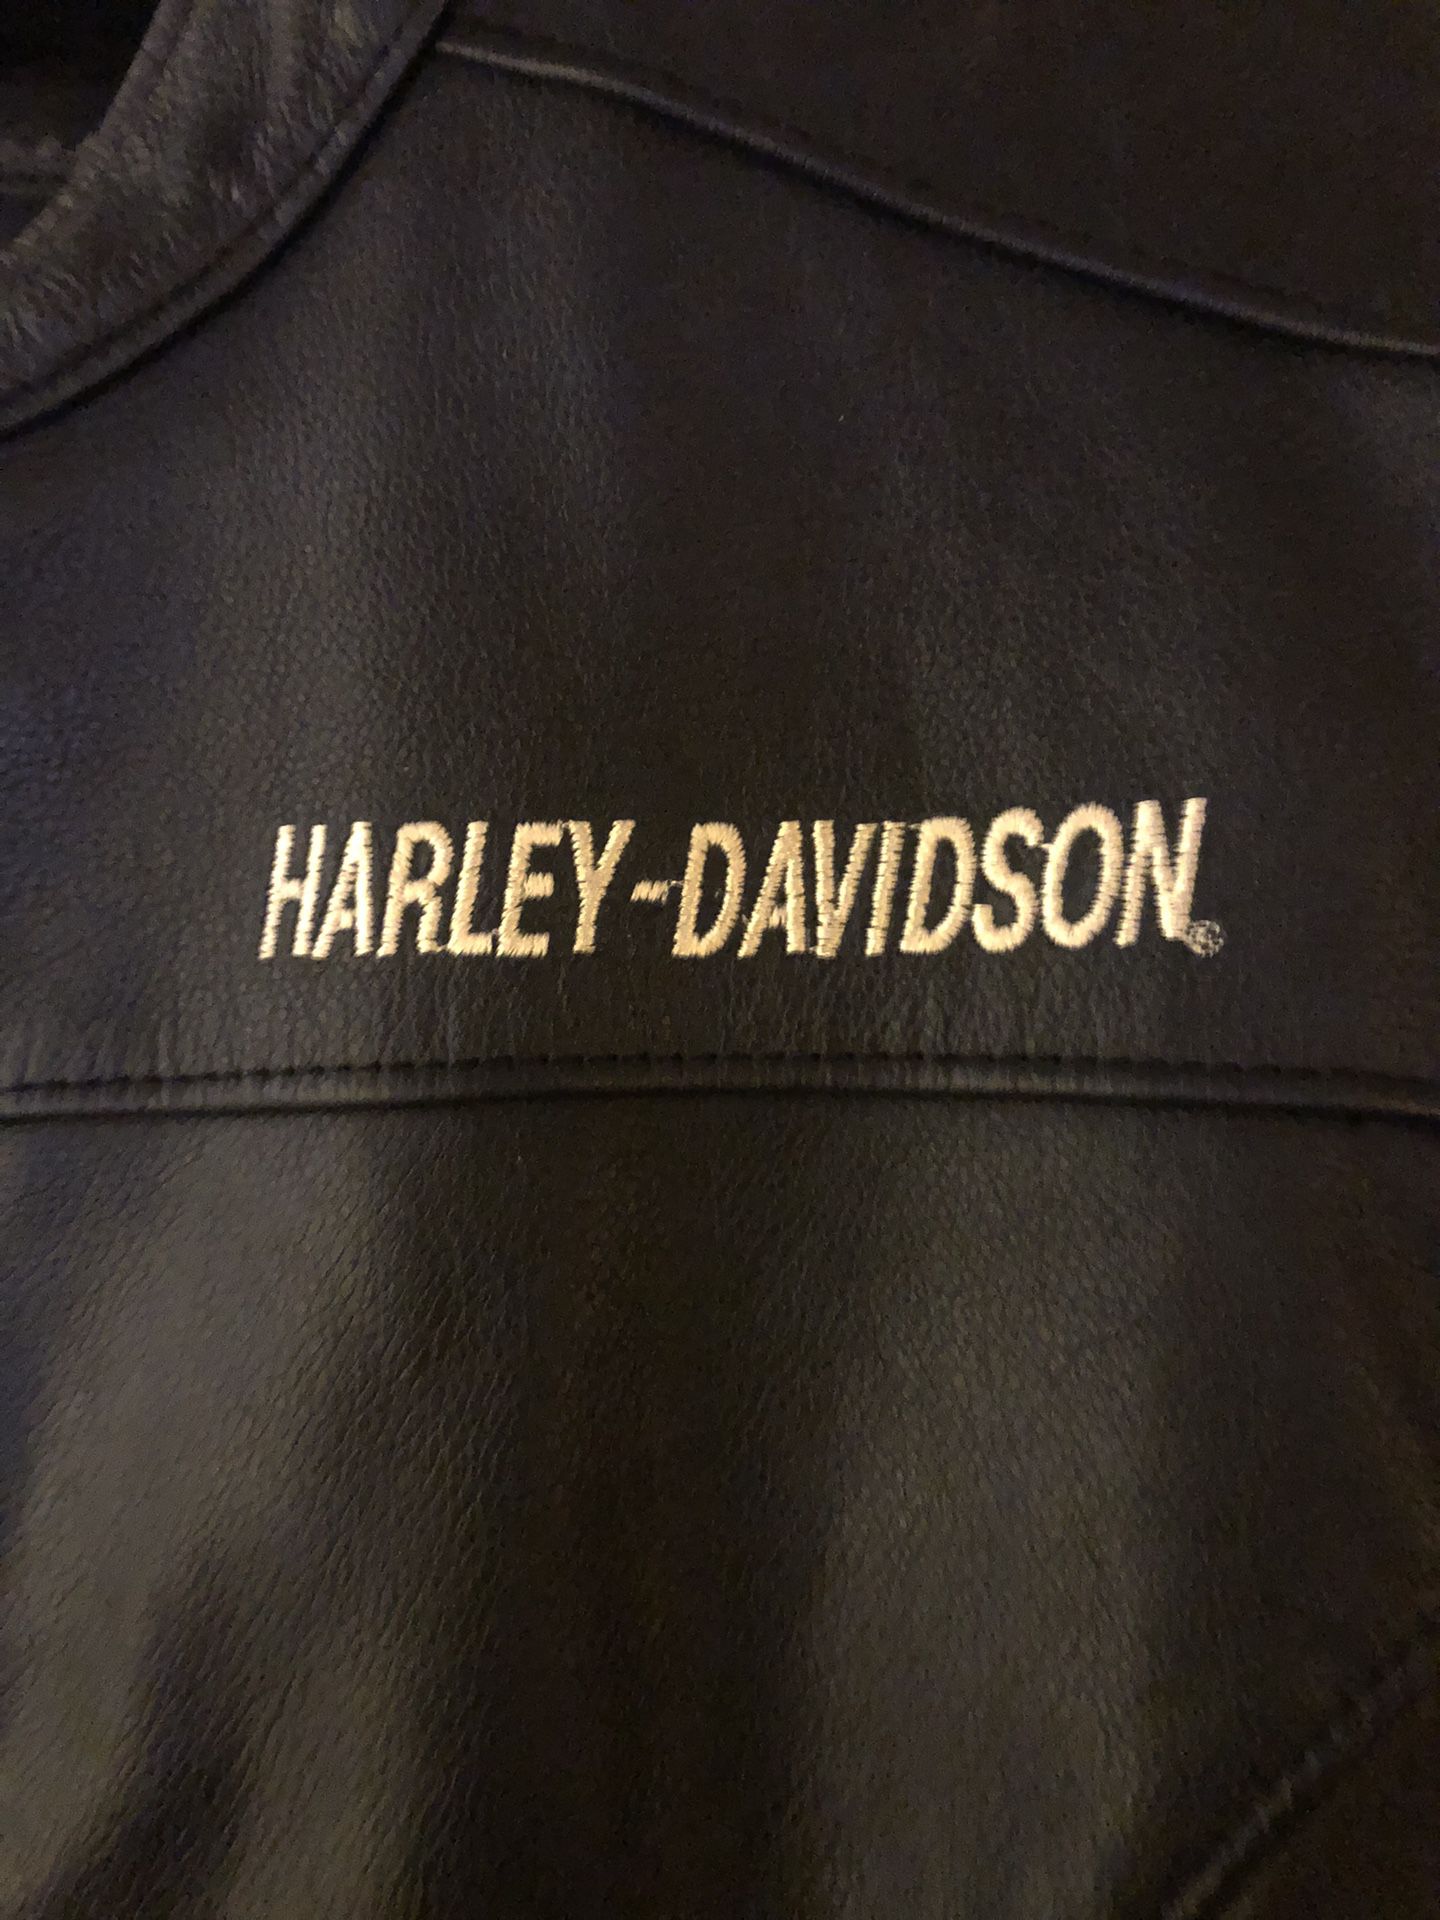 Women’s Black Harley Leather Jacket Size Medium